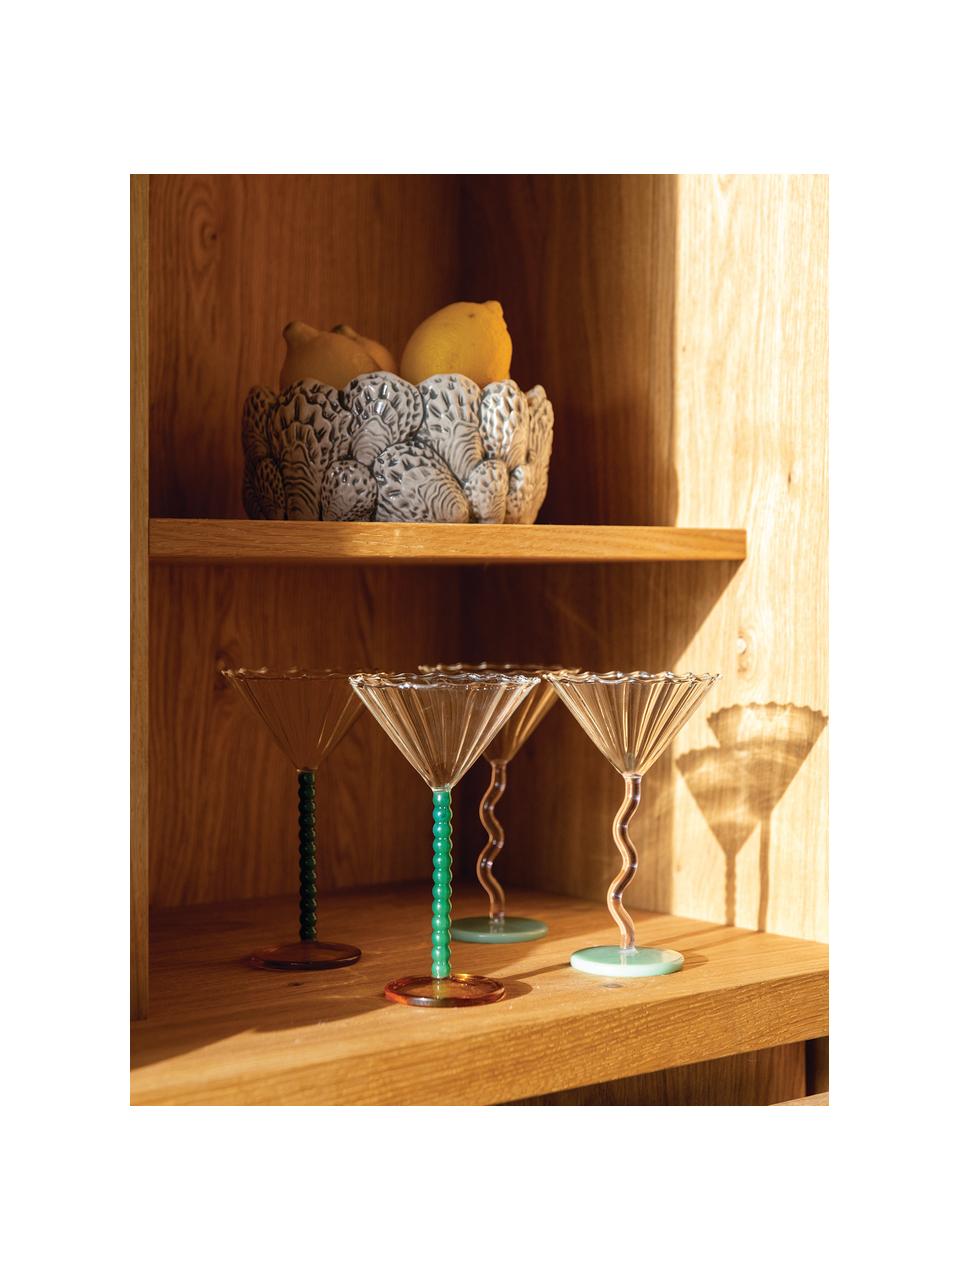 BicchierI da cocktail in vetro borosilicato Perle 2 pz, Vetro borosilicato, Trasparente, verde scuro, arancione, Ø 17 x Alt. 10 cm, 150 ml